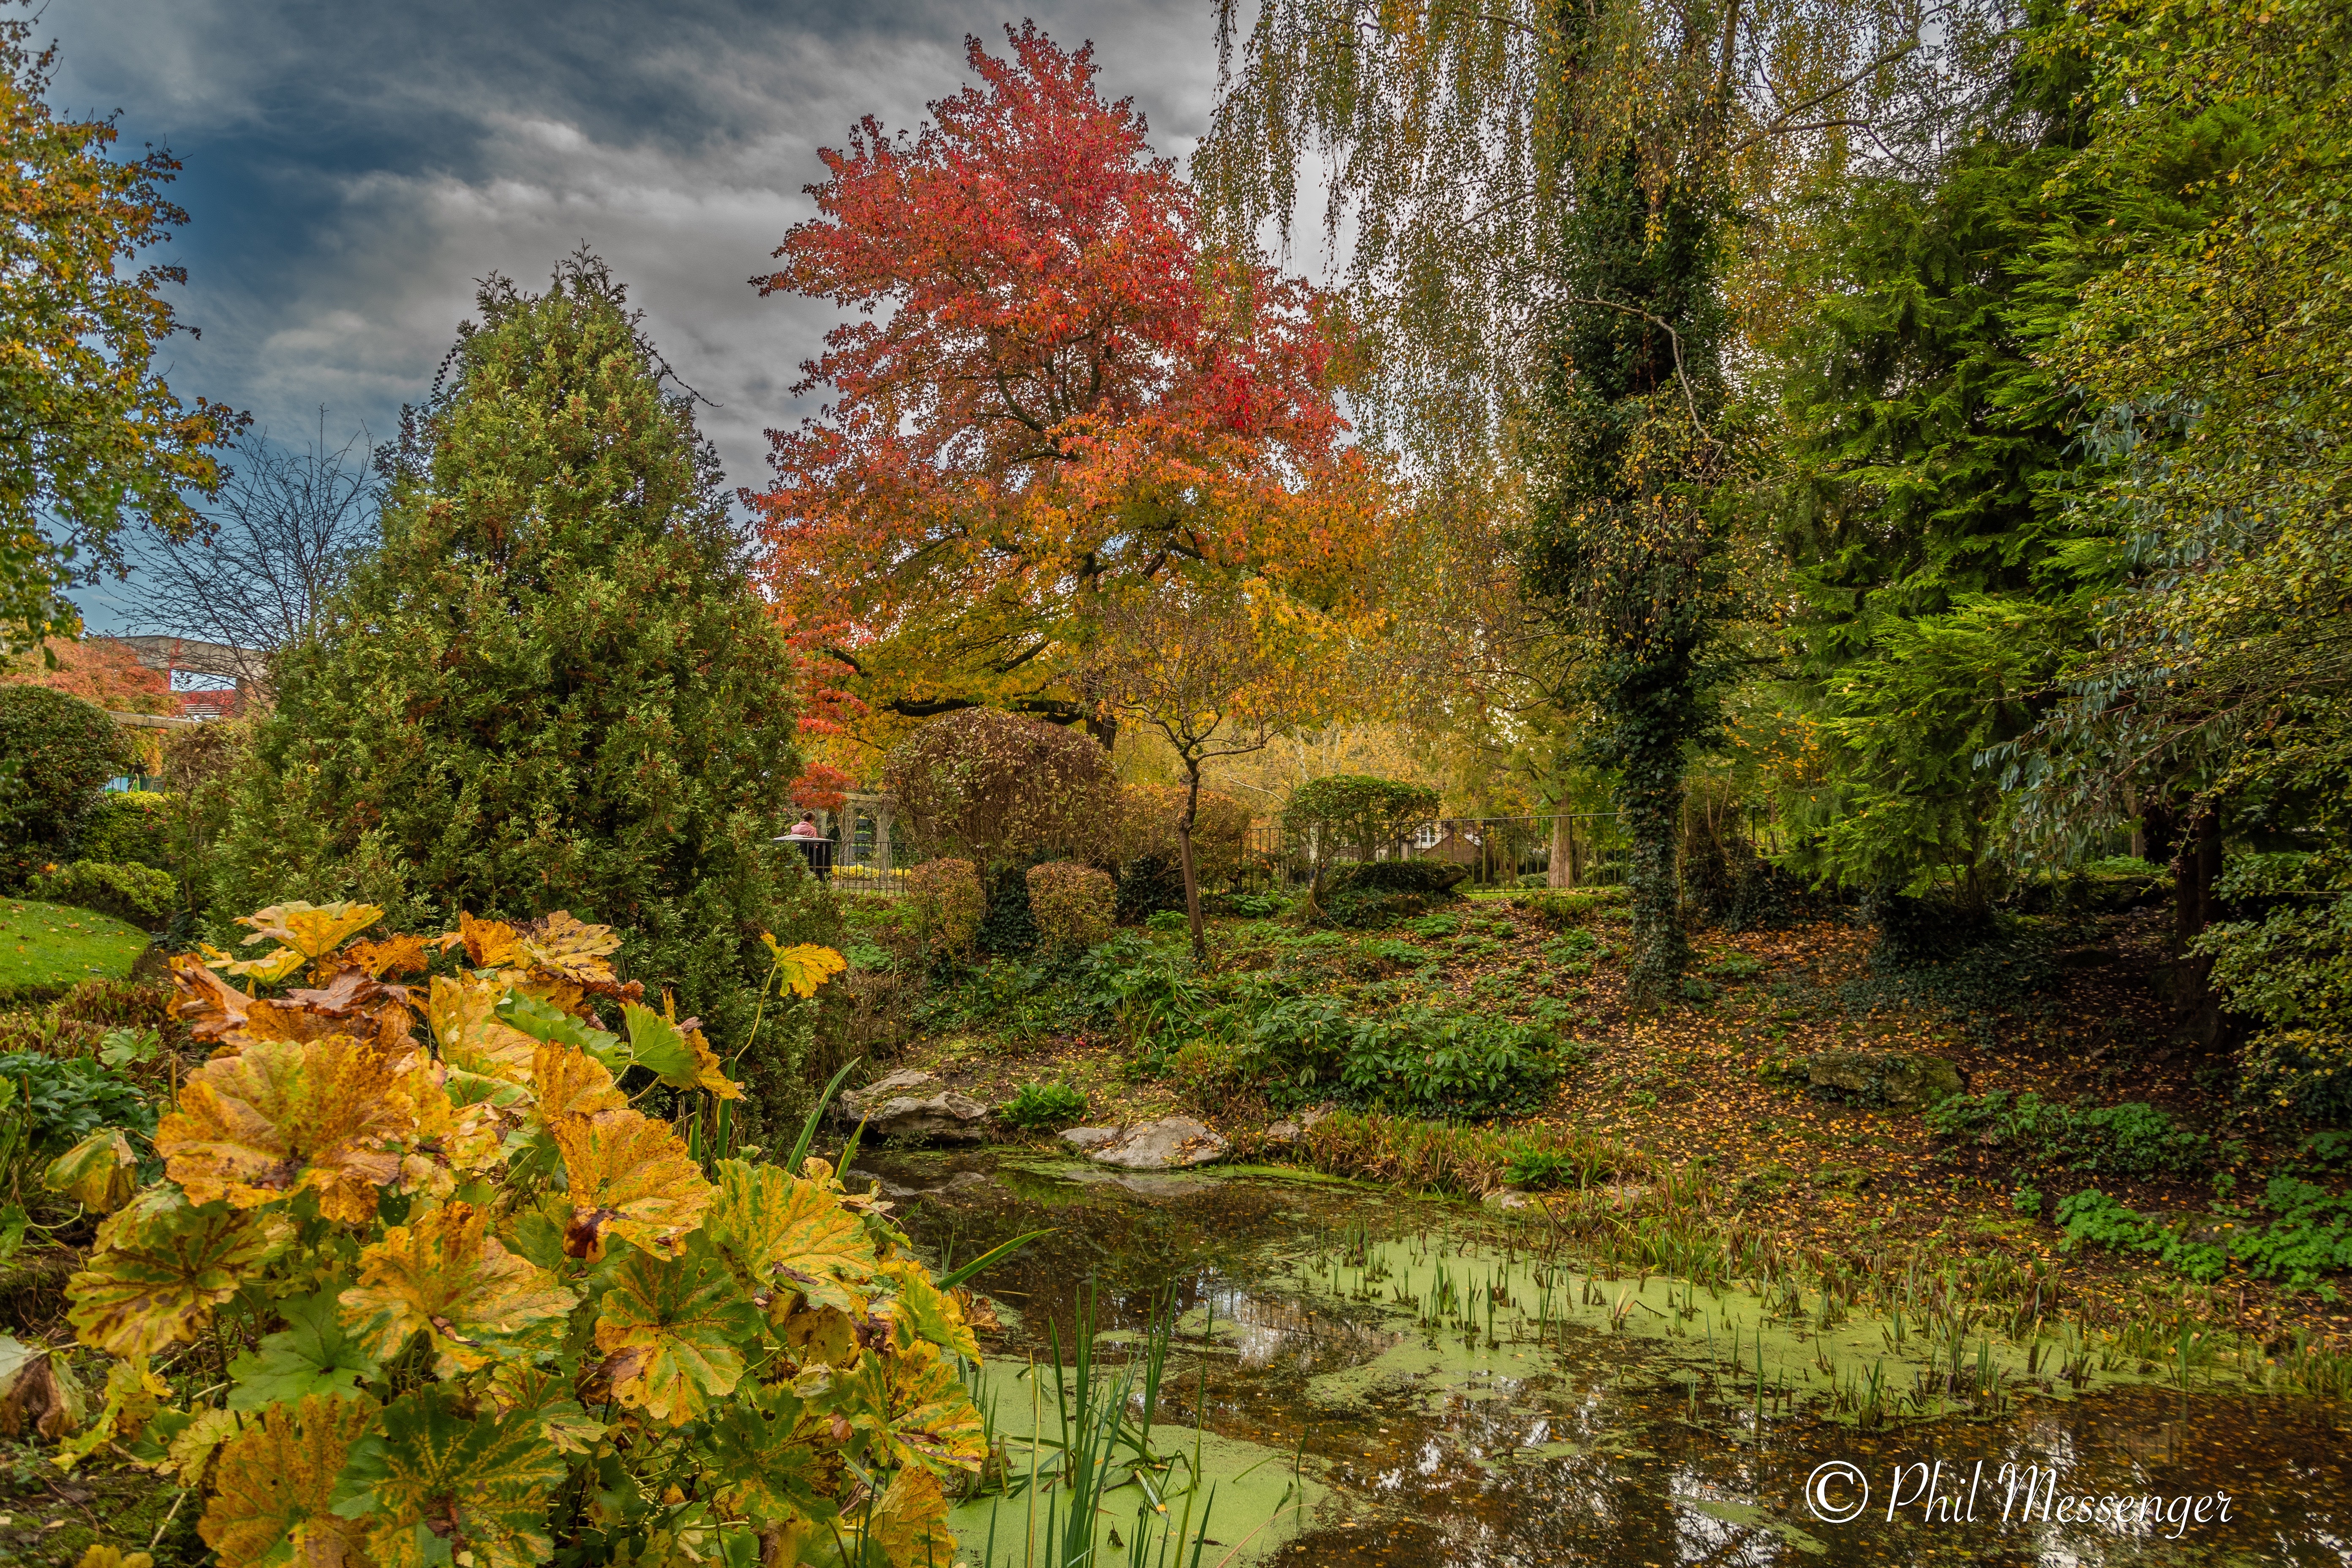 Autumn colours a t Queens park, Swindon UK